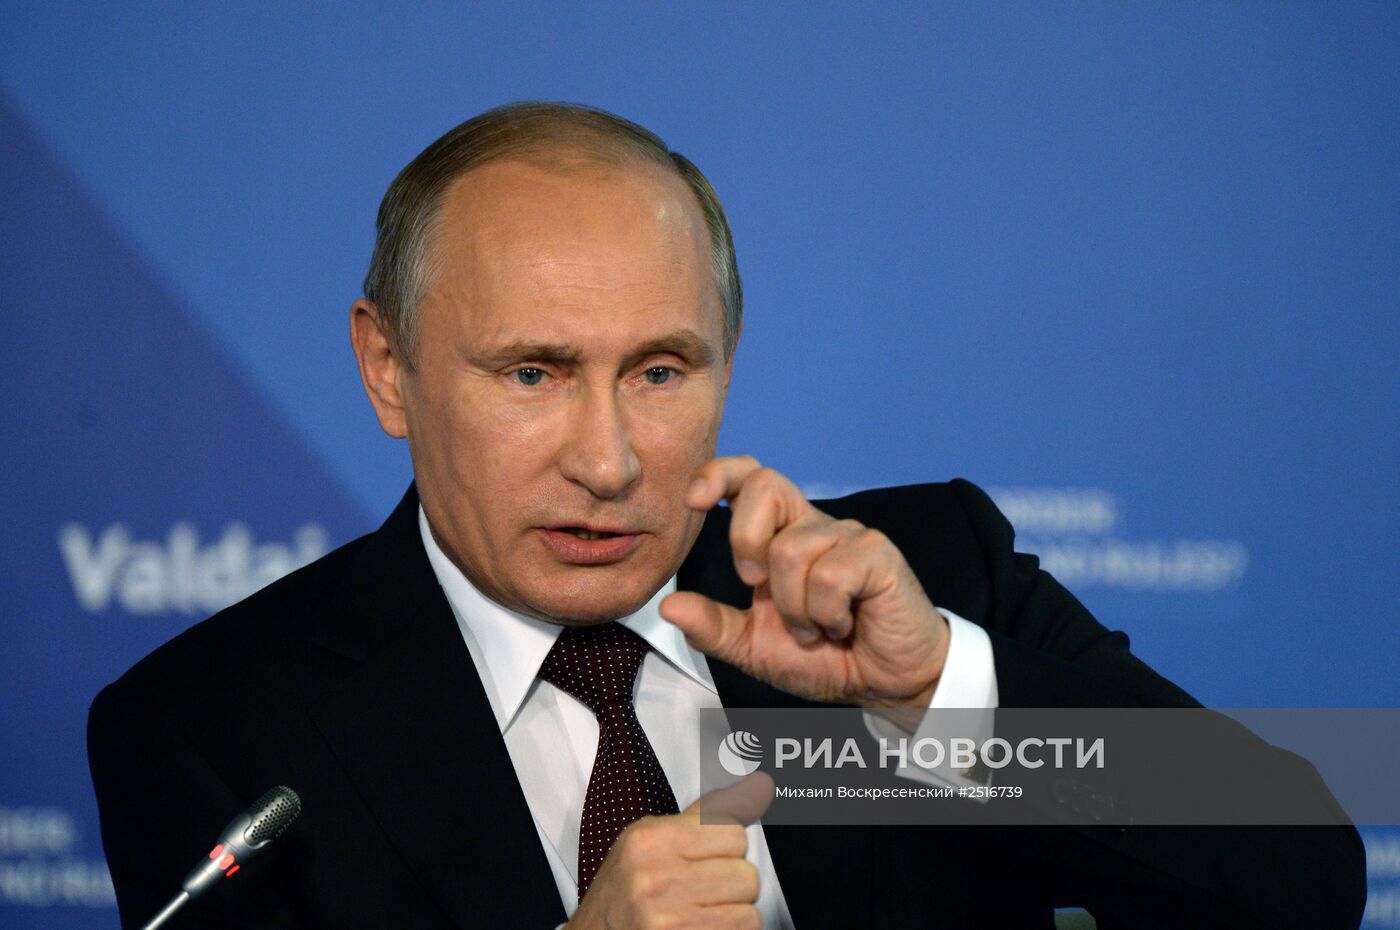 В.Путин принял участие в итоговой пленарной сессии XI заседания Международного дискуссионного клуба "Валдай"